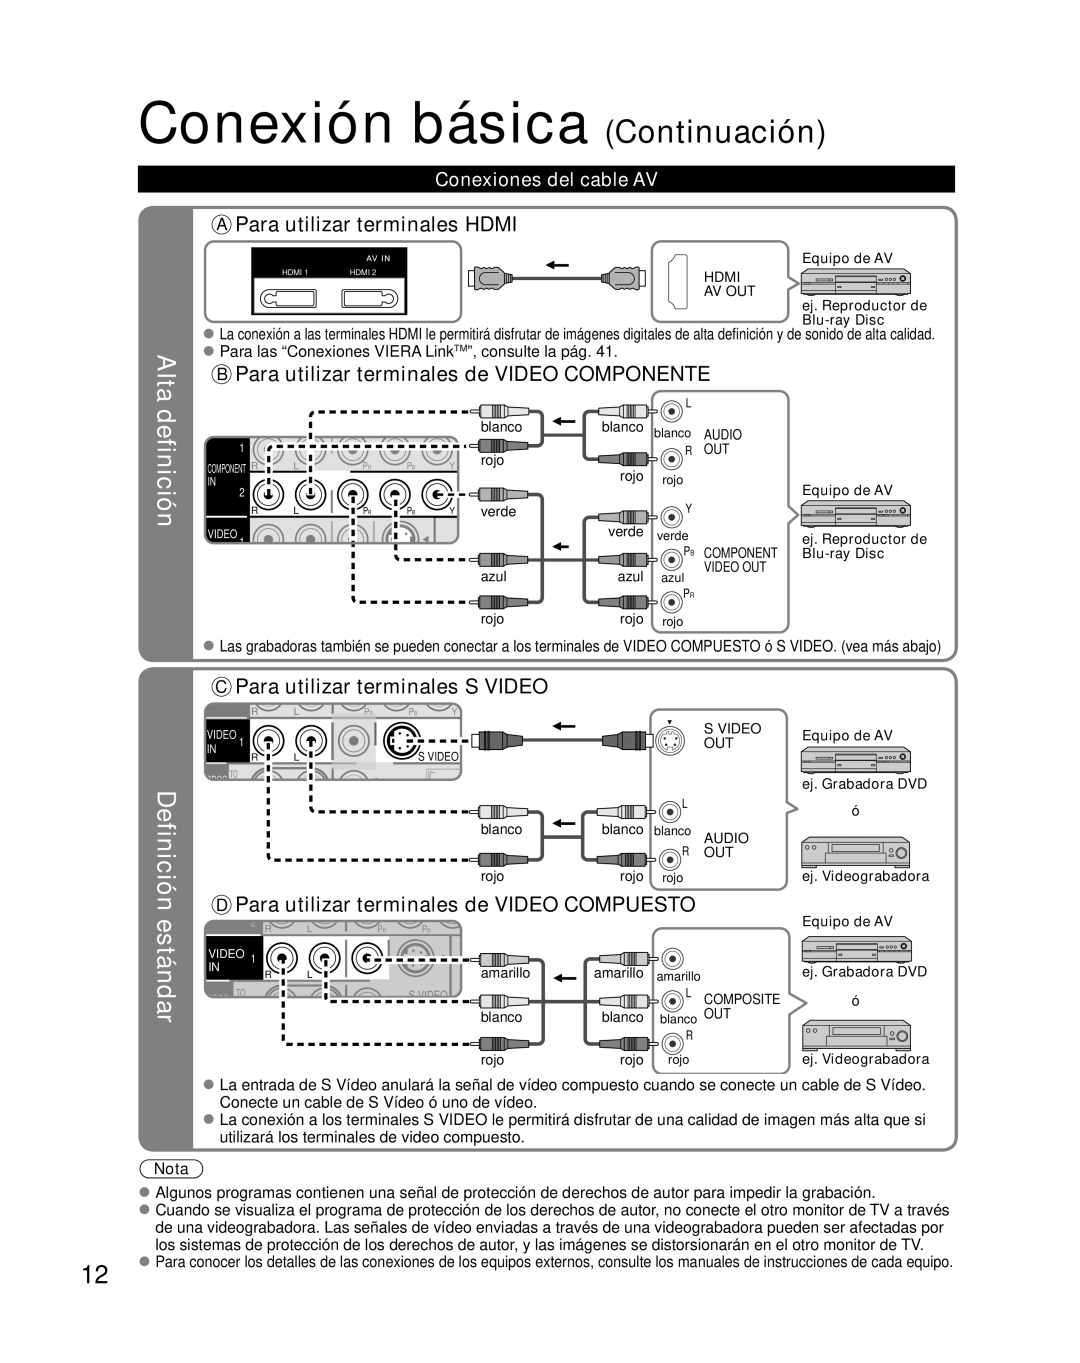 Panasonic TH-42PZ85U definición, estándar, Alta, A Para utilizar terminales HDMI, Definición, Conexiones del cable AV 